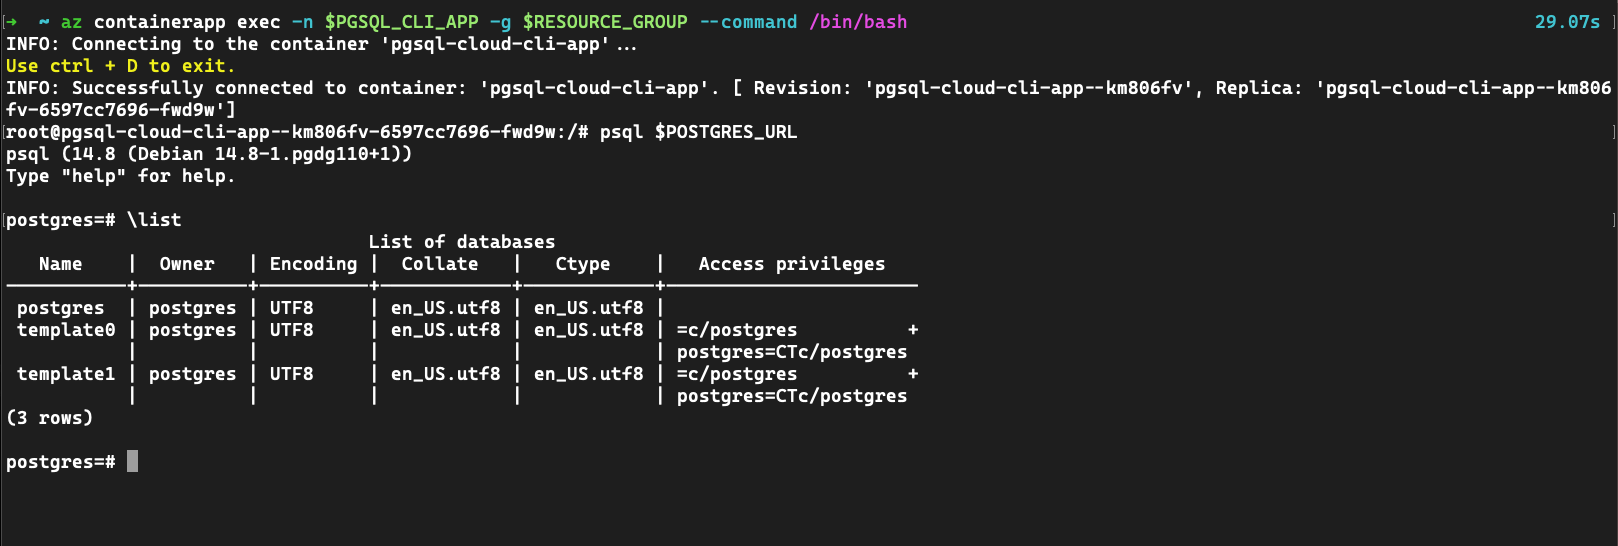 Screenshot dell'app contenitore usando pgsql per connettersi a un servizio PostgreSQL.